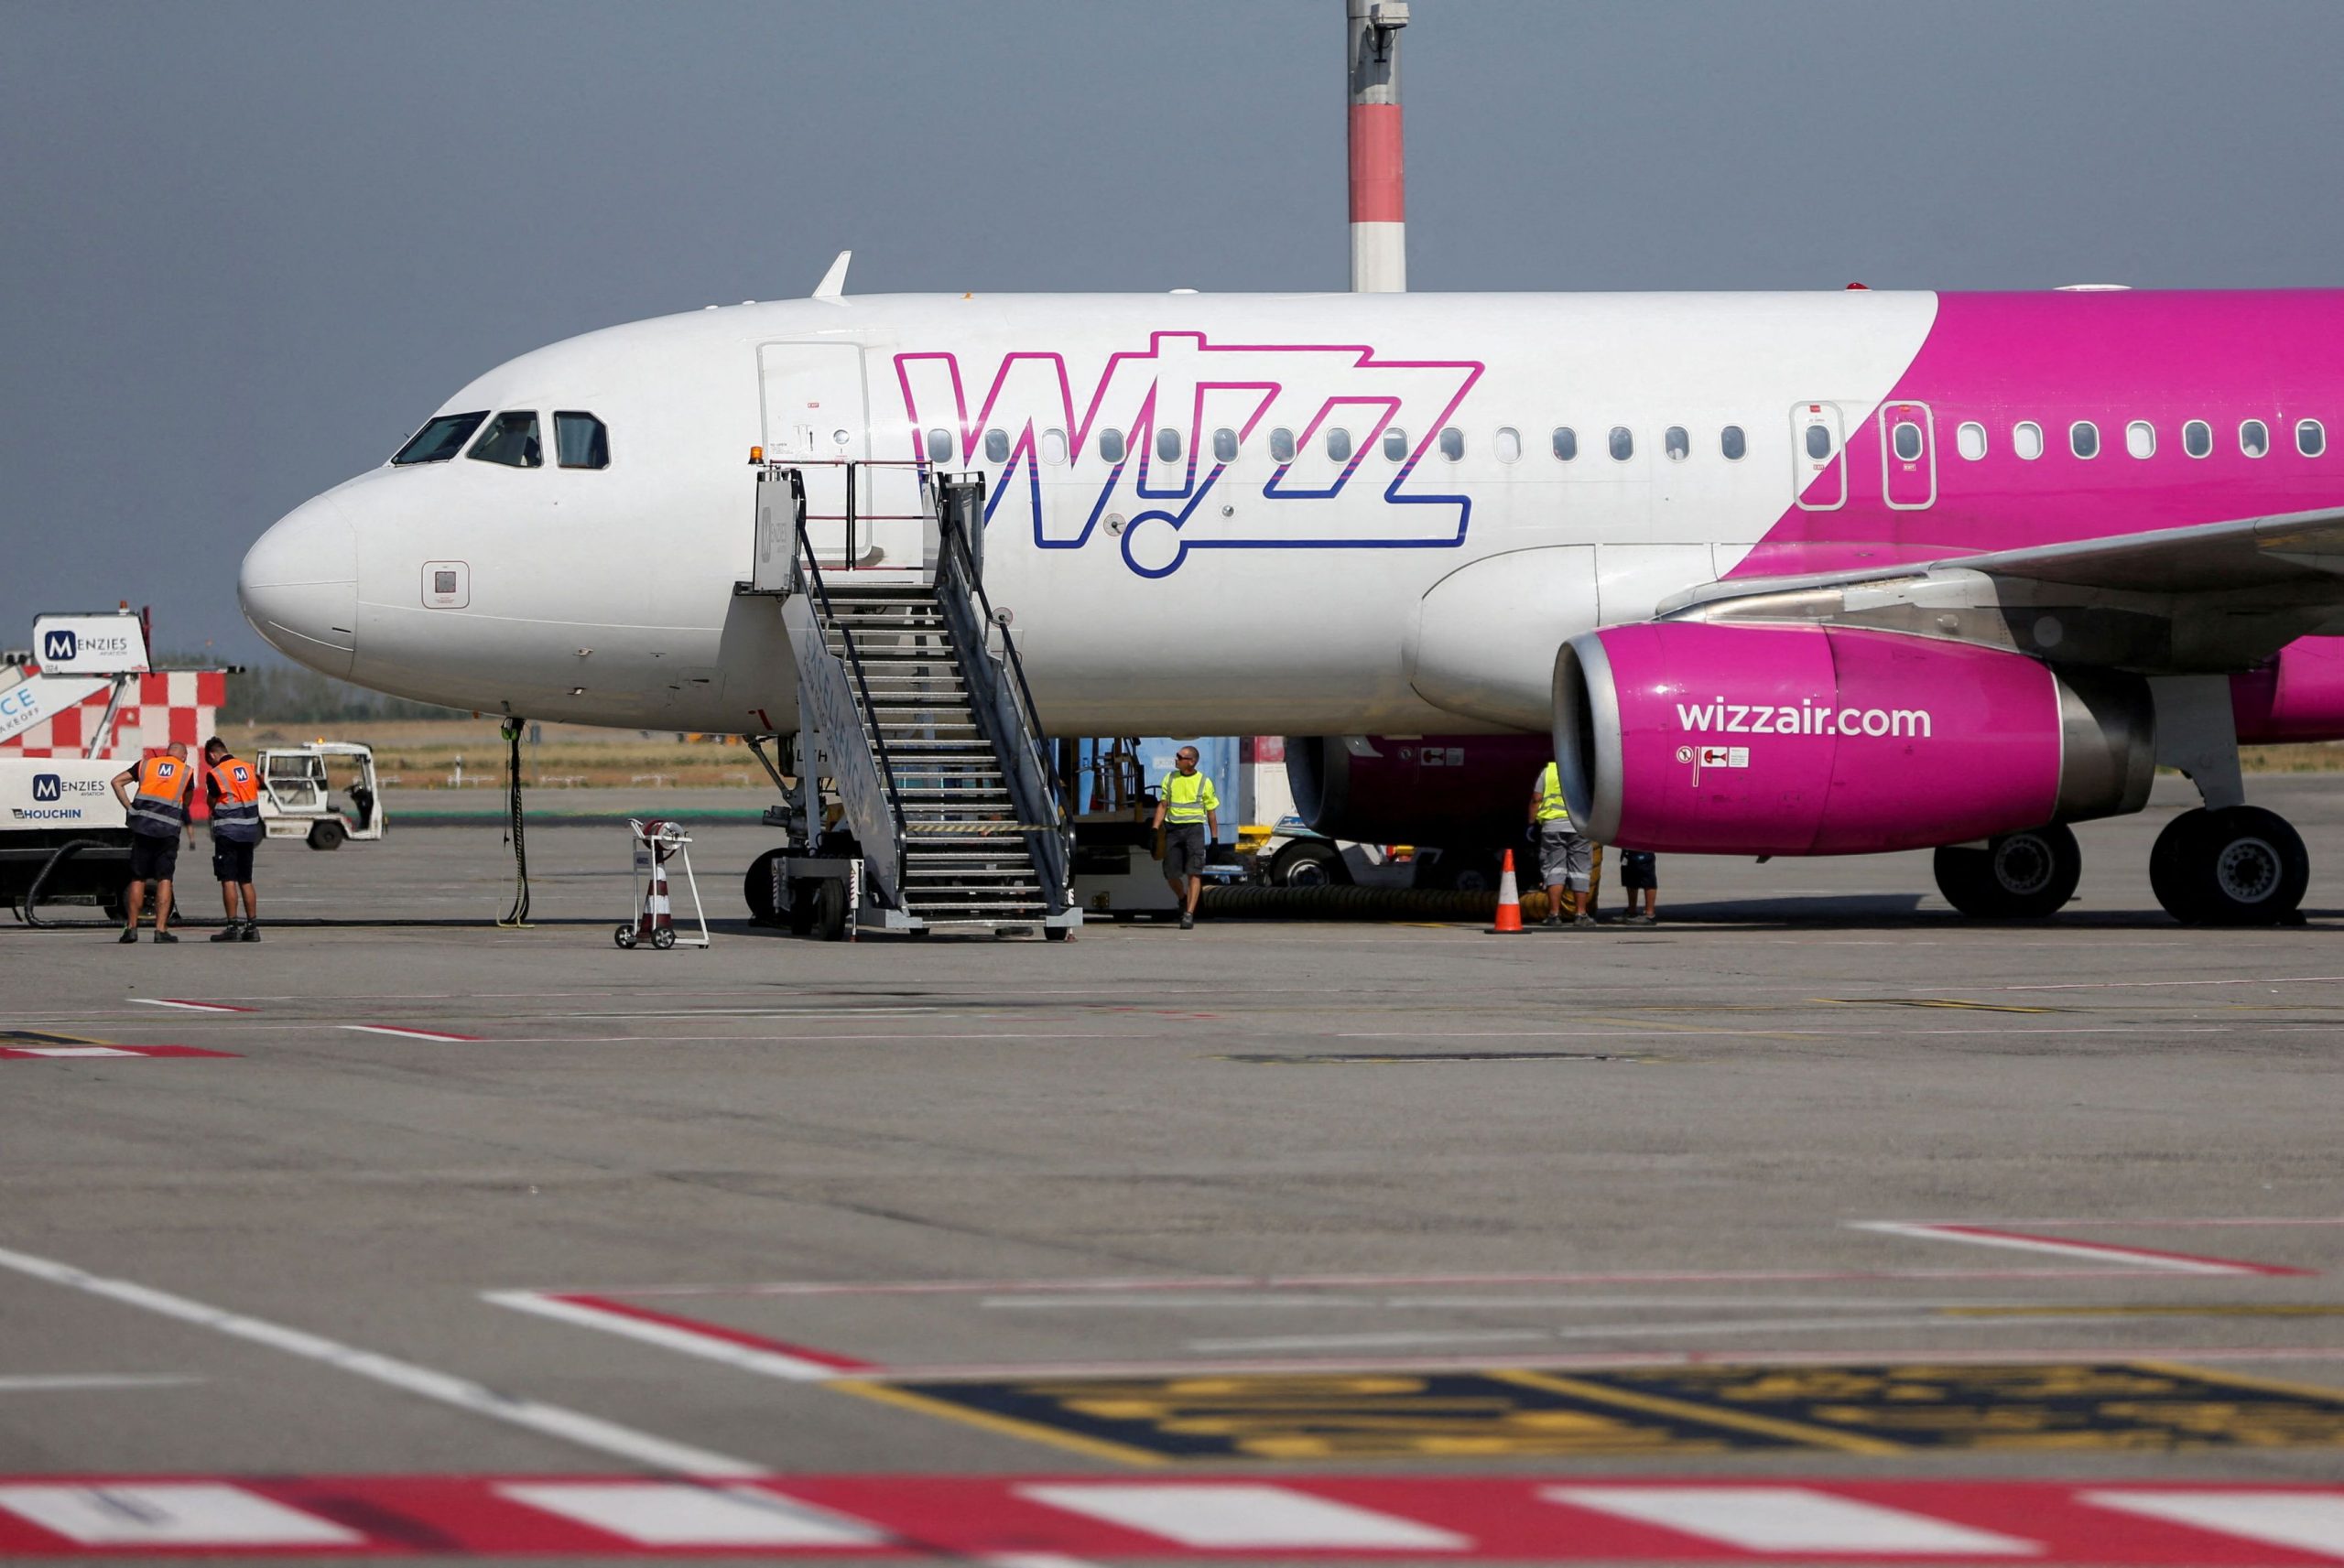 Μολδαβία: Η Wizz Air αναστέλλει τις πτήσεις λόγω ανησυχιών ασφάλειας